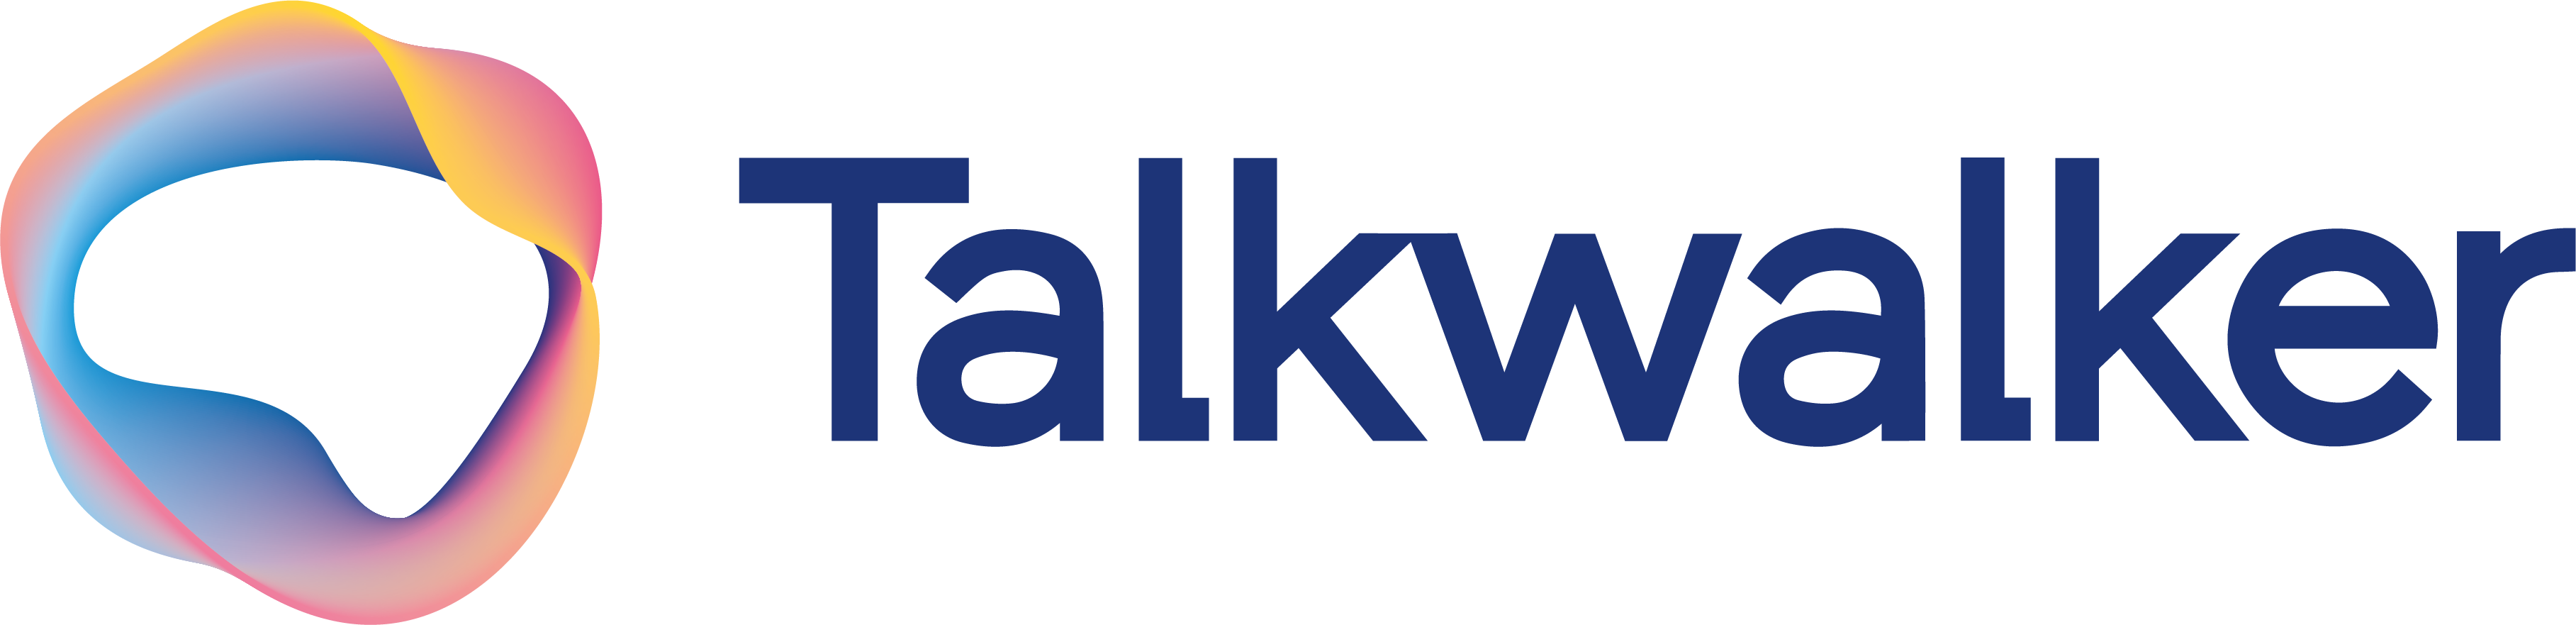 Talkwalker _logo